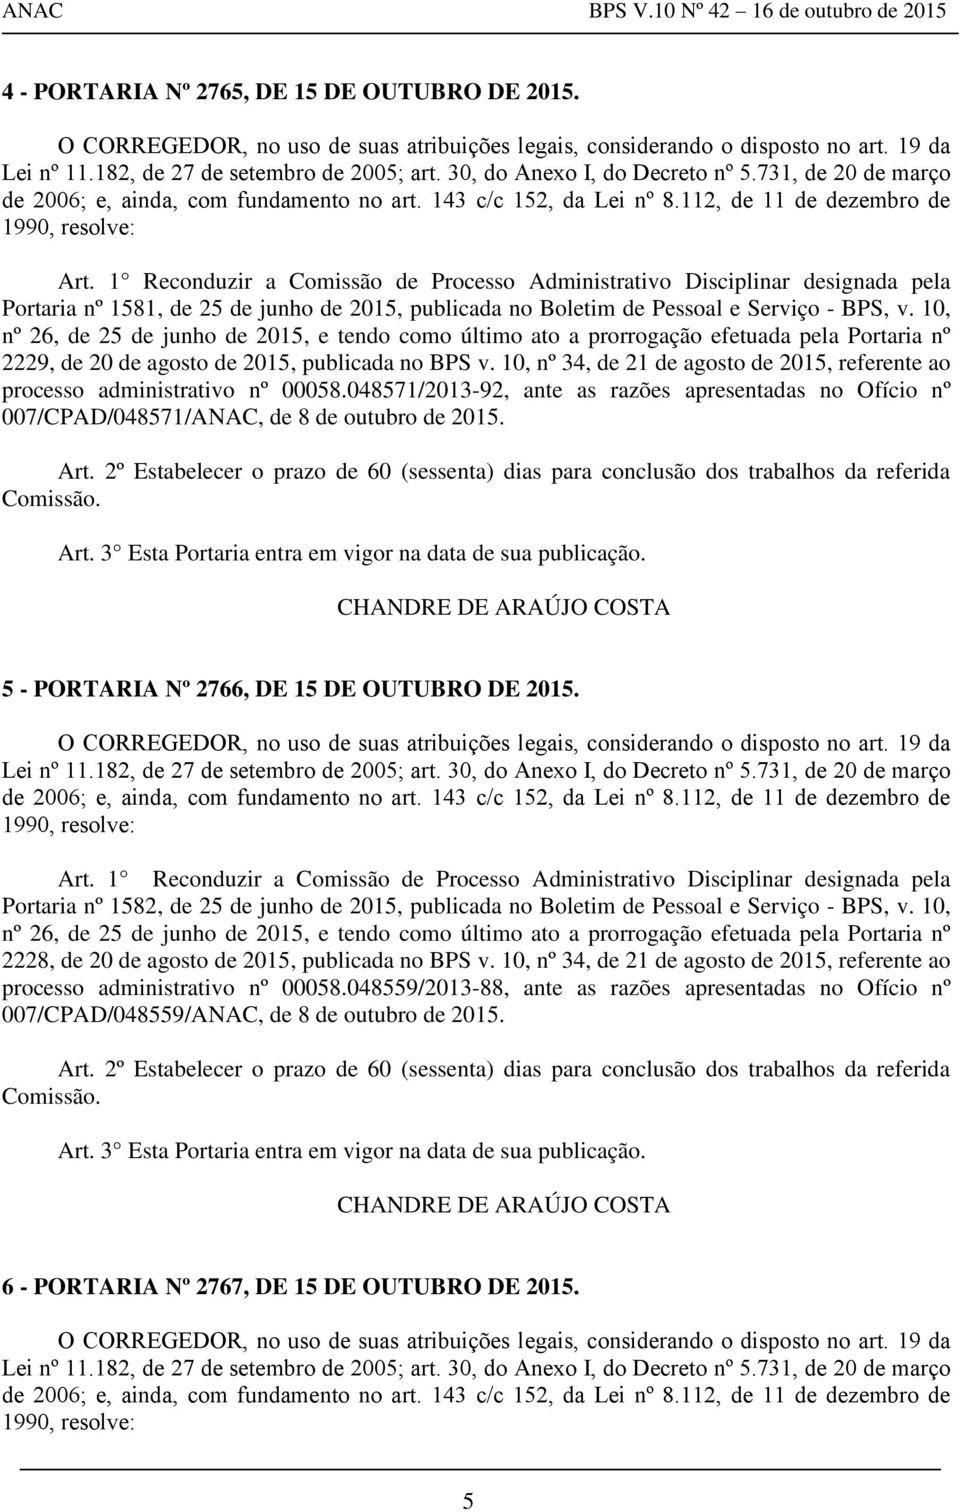 1 Reconduzir a Comissão de Processo Administrativo Disciplinar designada pela Portaria nº 1581, de 25 de junho de 2015, publicada no Boletim de Pessoal e Serviço - BPS, v.